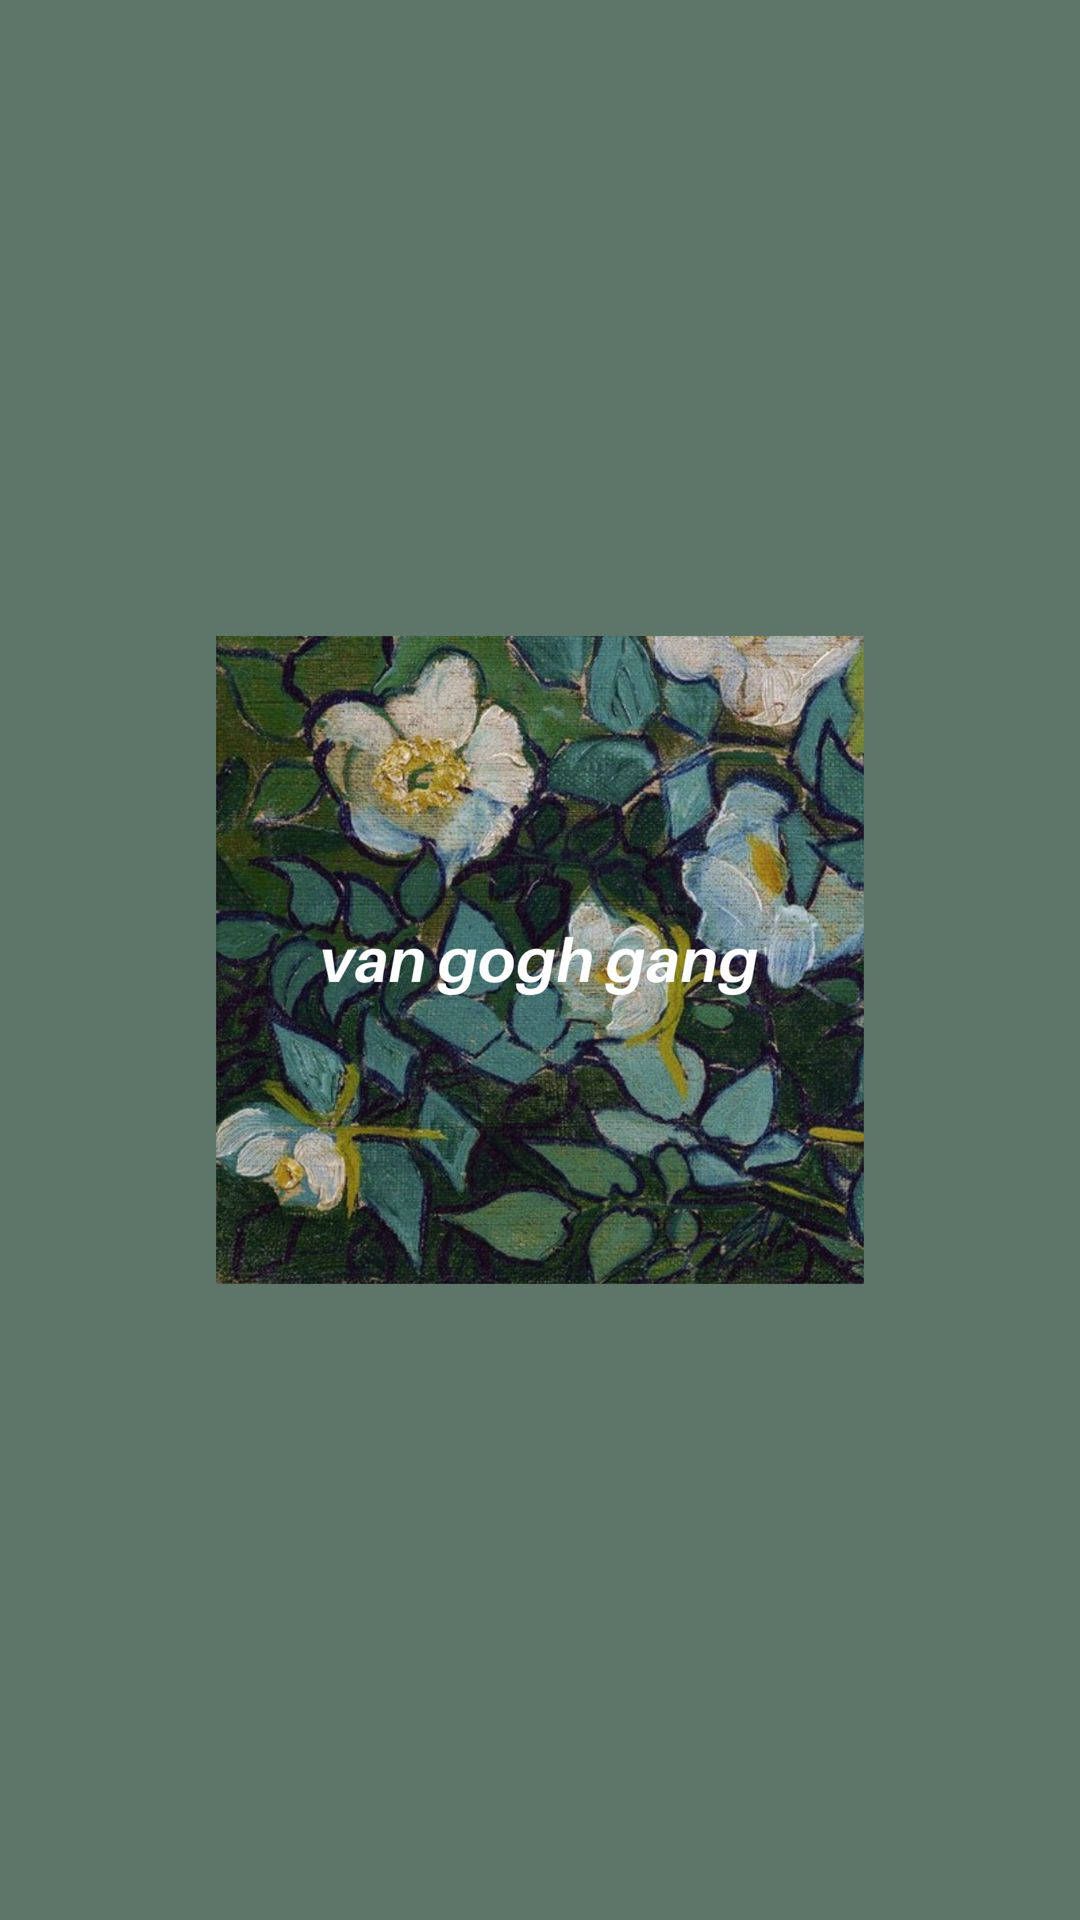 Vincent Van Gogh Hintergrundbild 1080x1920. Download Vincent Van Gogh Gang Aesthetic Wallpaper